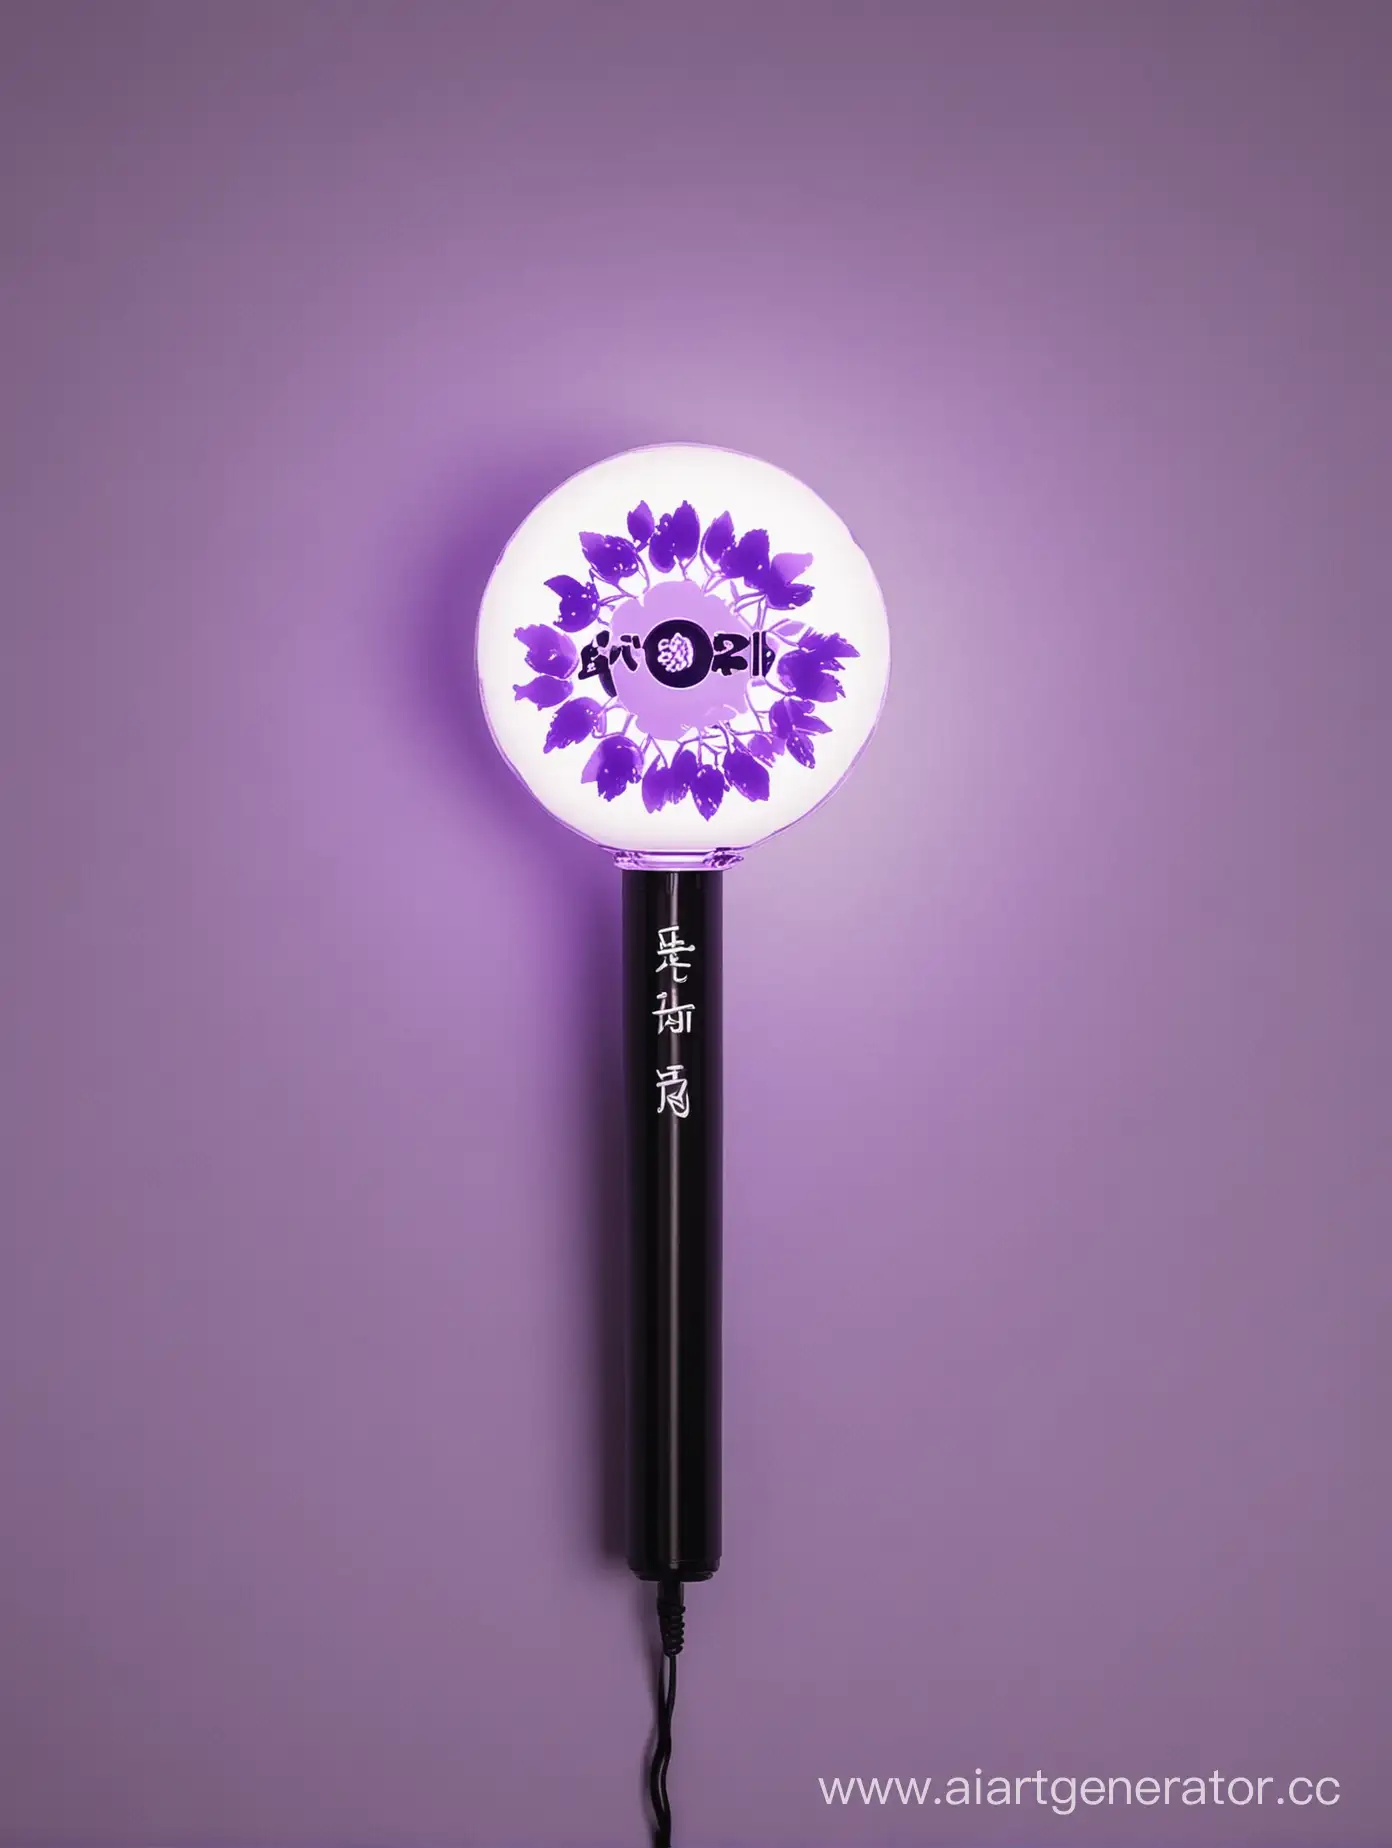 Лайтстик kpop группы ROPHILES круглая форма, название группы внутри лайстика, фиолетовый, чёрный и белый, с фигурками цветов внутри